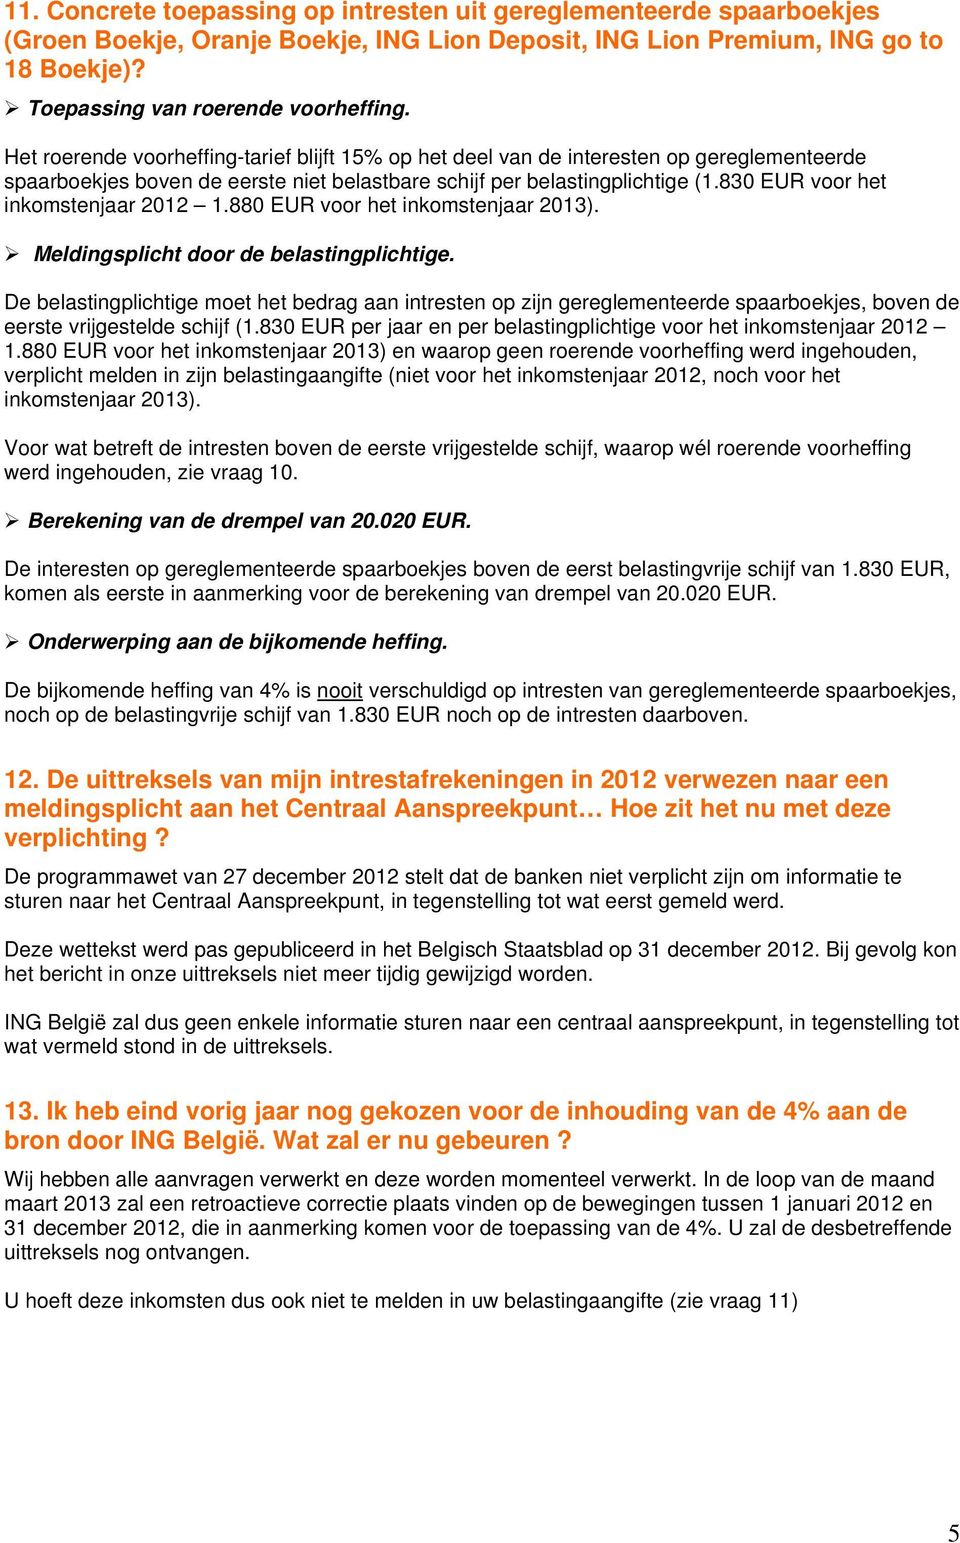 830 EUR voor het inkomstenjaar 2012 1.880 EUR voor het inkomstenjaar 2013). Meldingsplicht door de belastingplichtige.